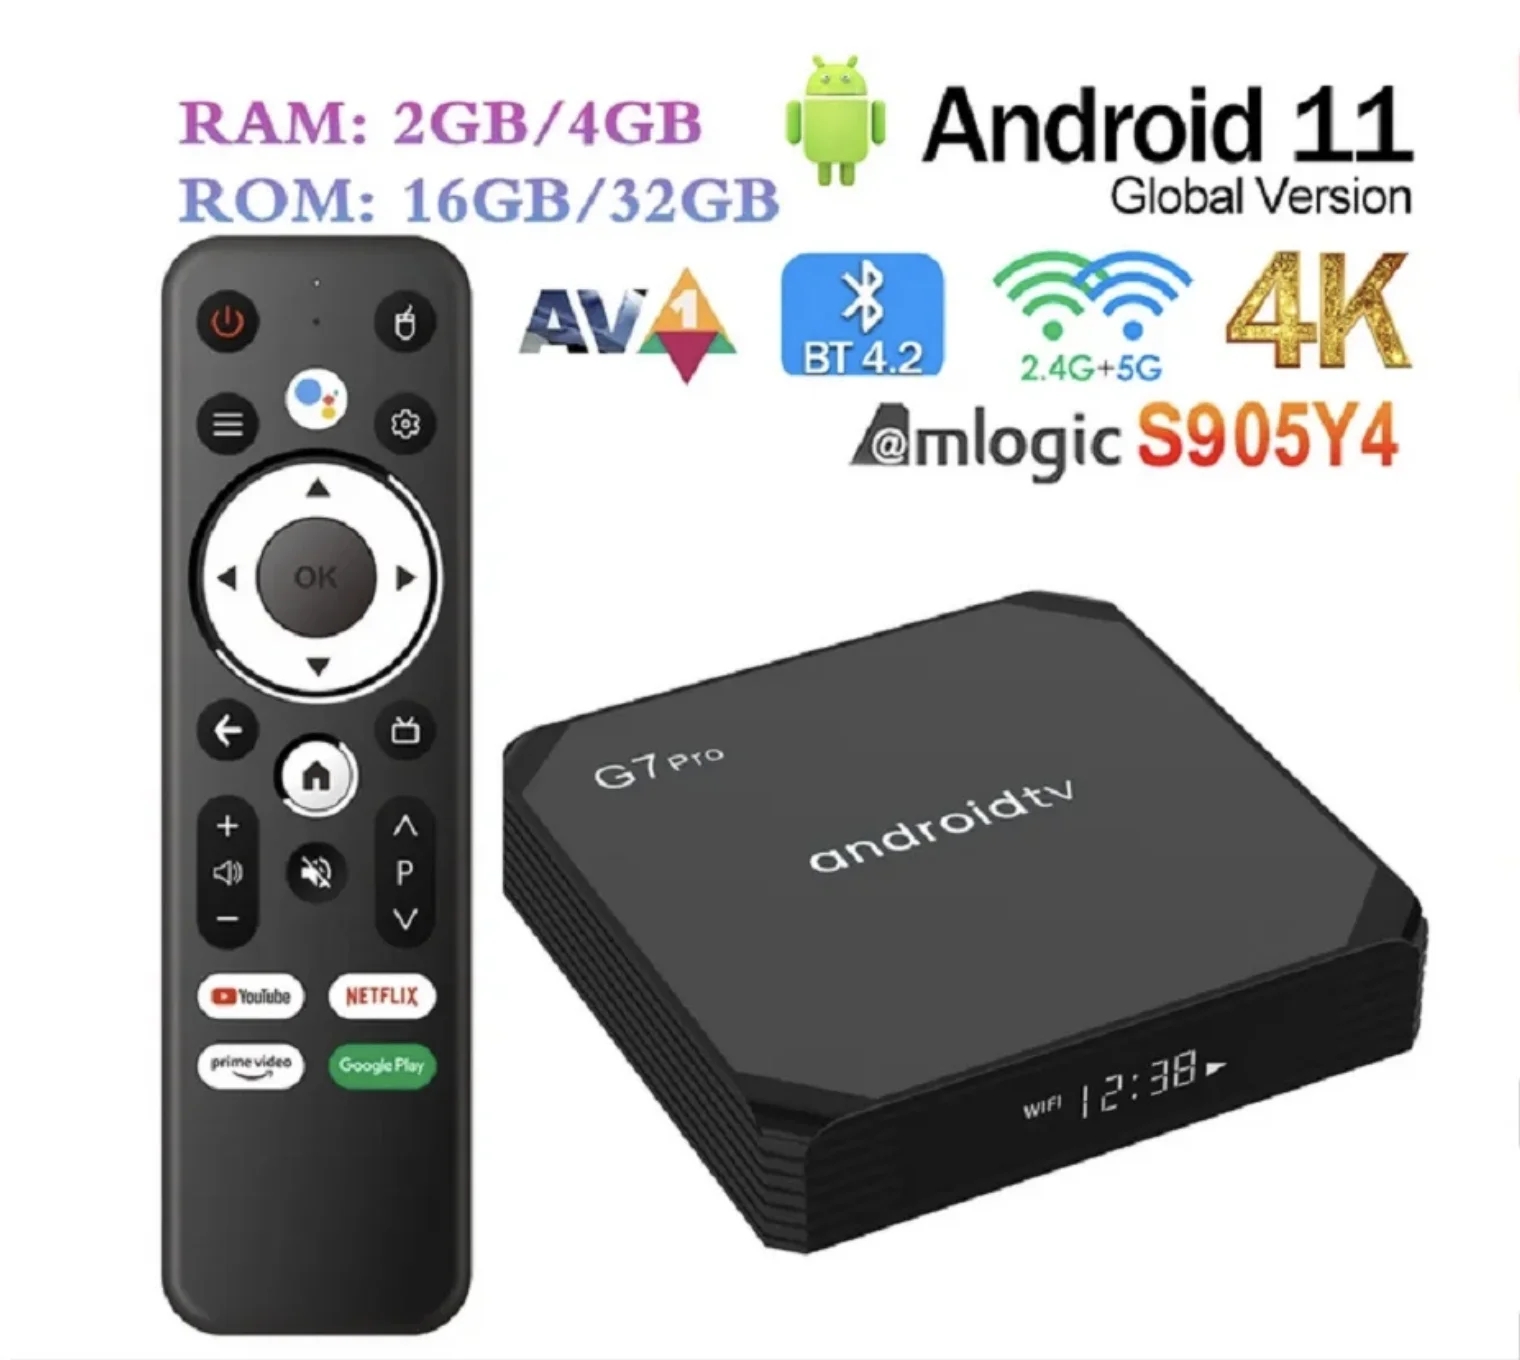 G7 PRO Smart ATV Android 11 TV BOX Amlogic S905Y4 2GB 16GB / 4GB 32GB BT AVI 2.4G/5G Wifi 4K HDR Media Player Set Top Box